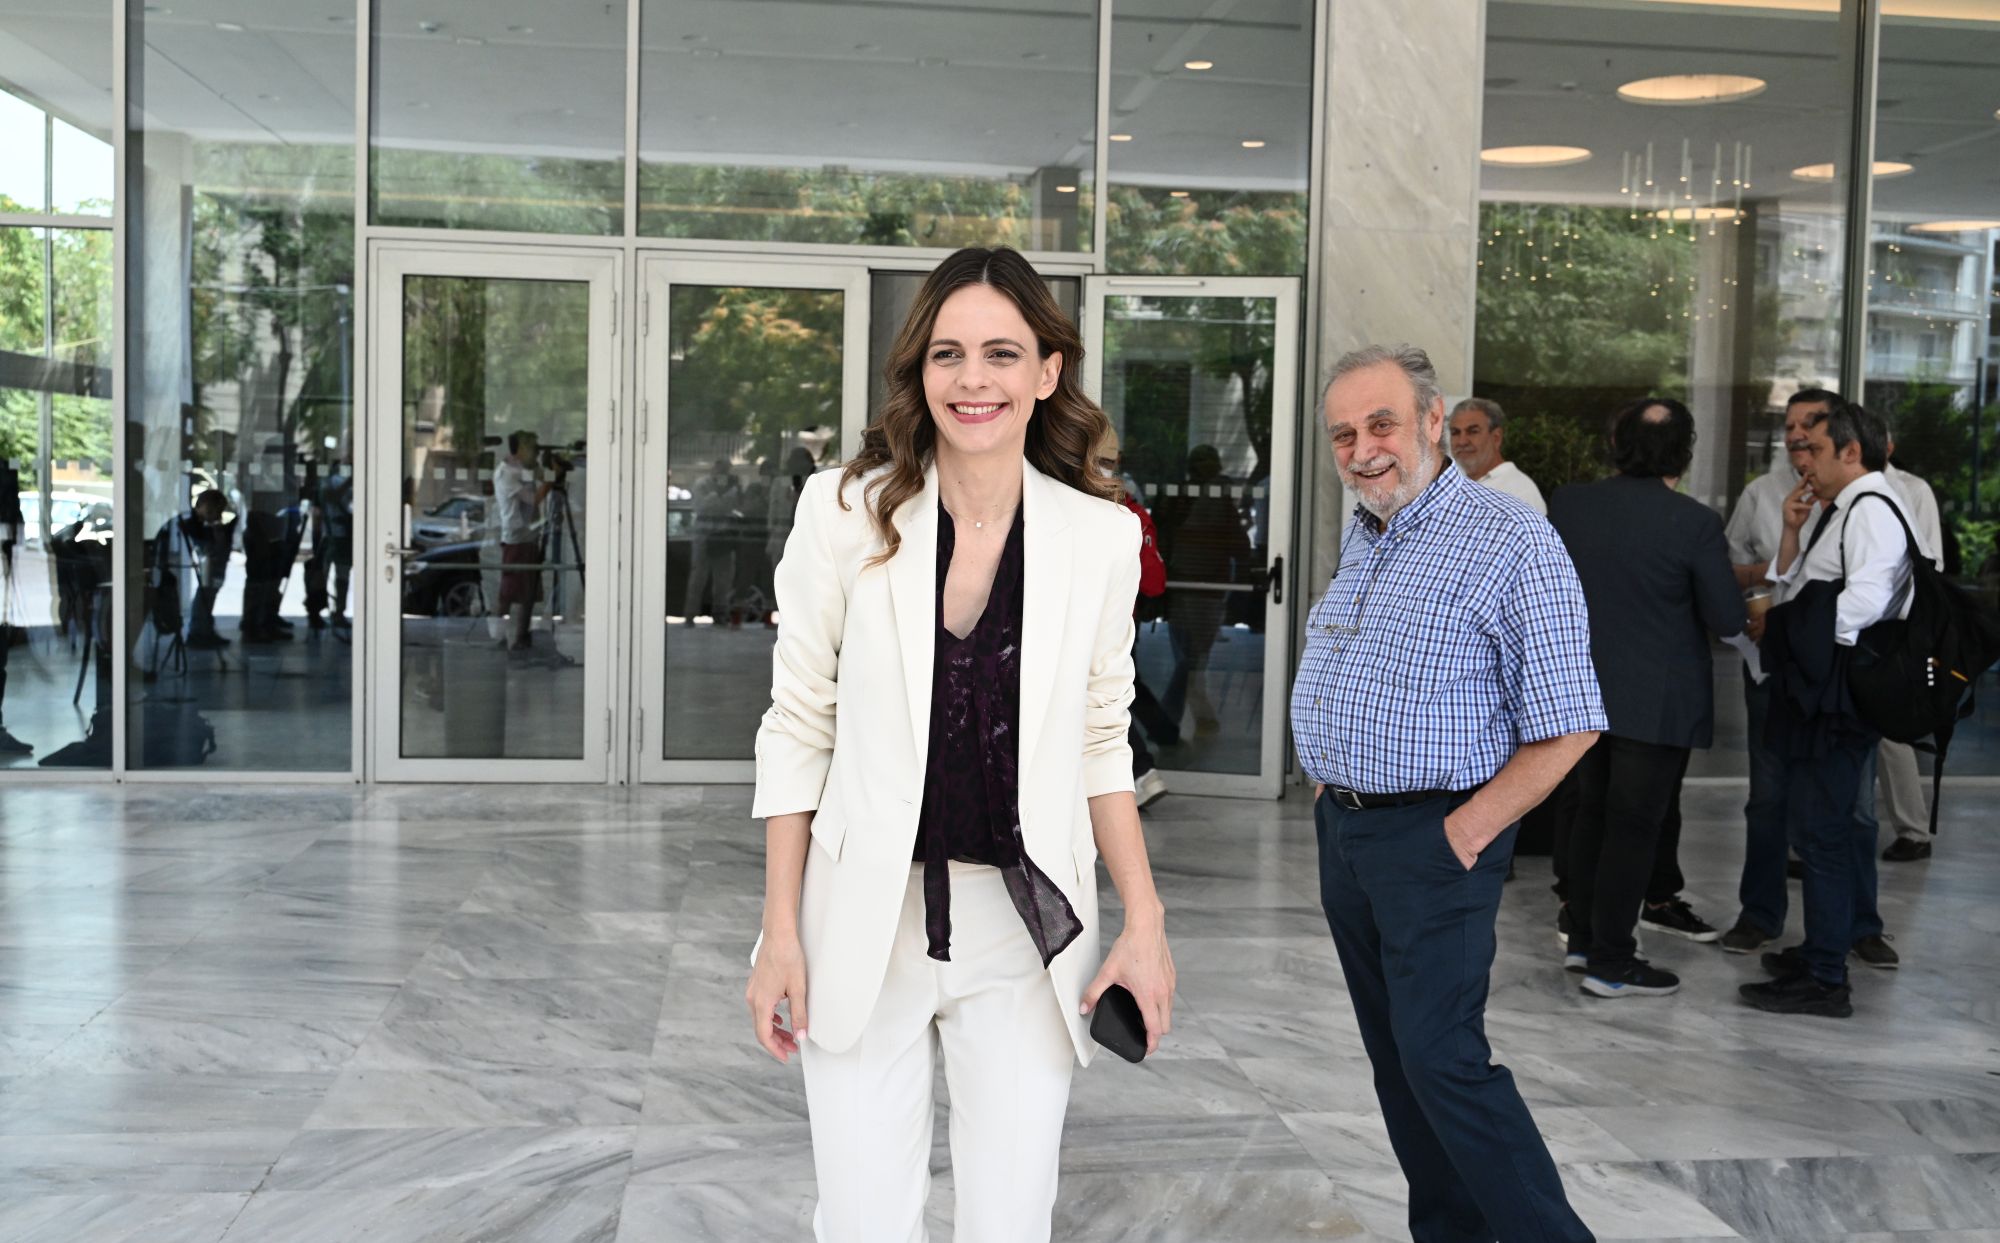 ΣΥΡΙΖΑ: Η Έφη Αχτσιόγλου συνεχίζει την περιοδεία της στο Μενίδι 